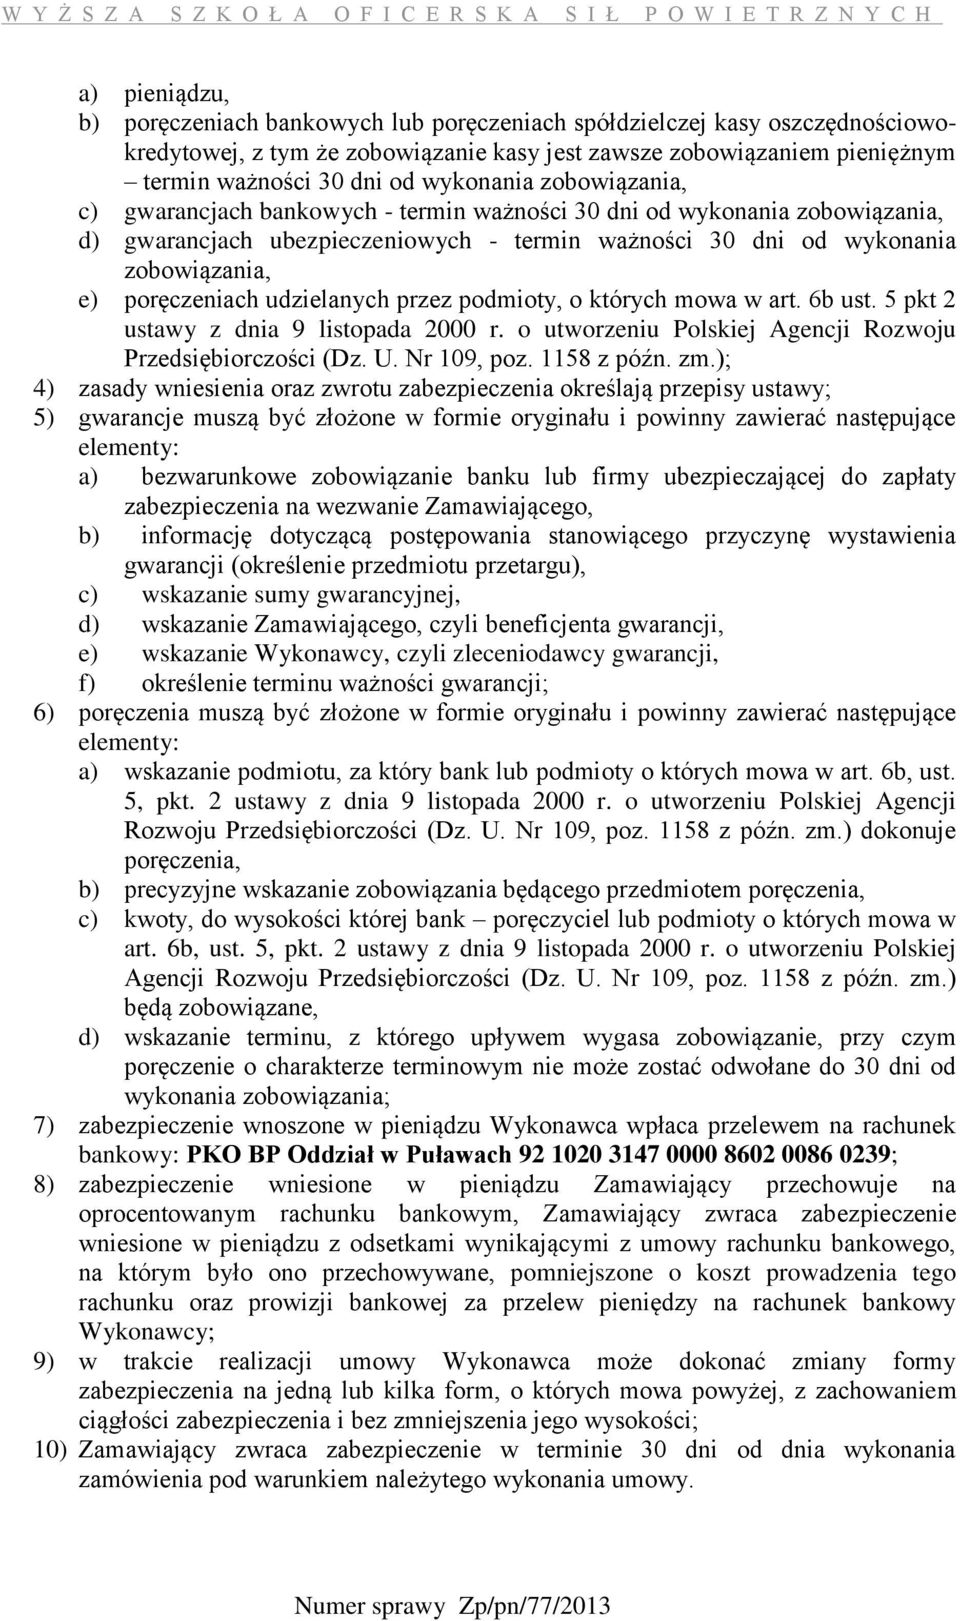 poręczeniach udzielanych przez podmioty, o których mowa w art. 6b ust. 5 pkt 2 ustawy z dnia 9 listopada 2000 r. o utworzeniu Polskiej Agencji Rozwoju Przedsiębiorczości (Dz. U. Nr 109, poz.